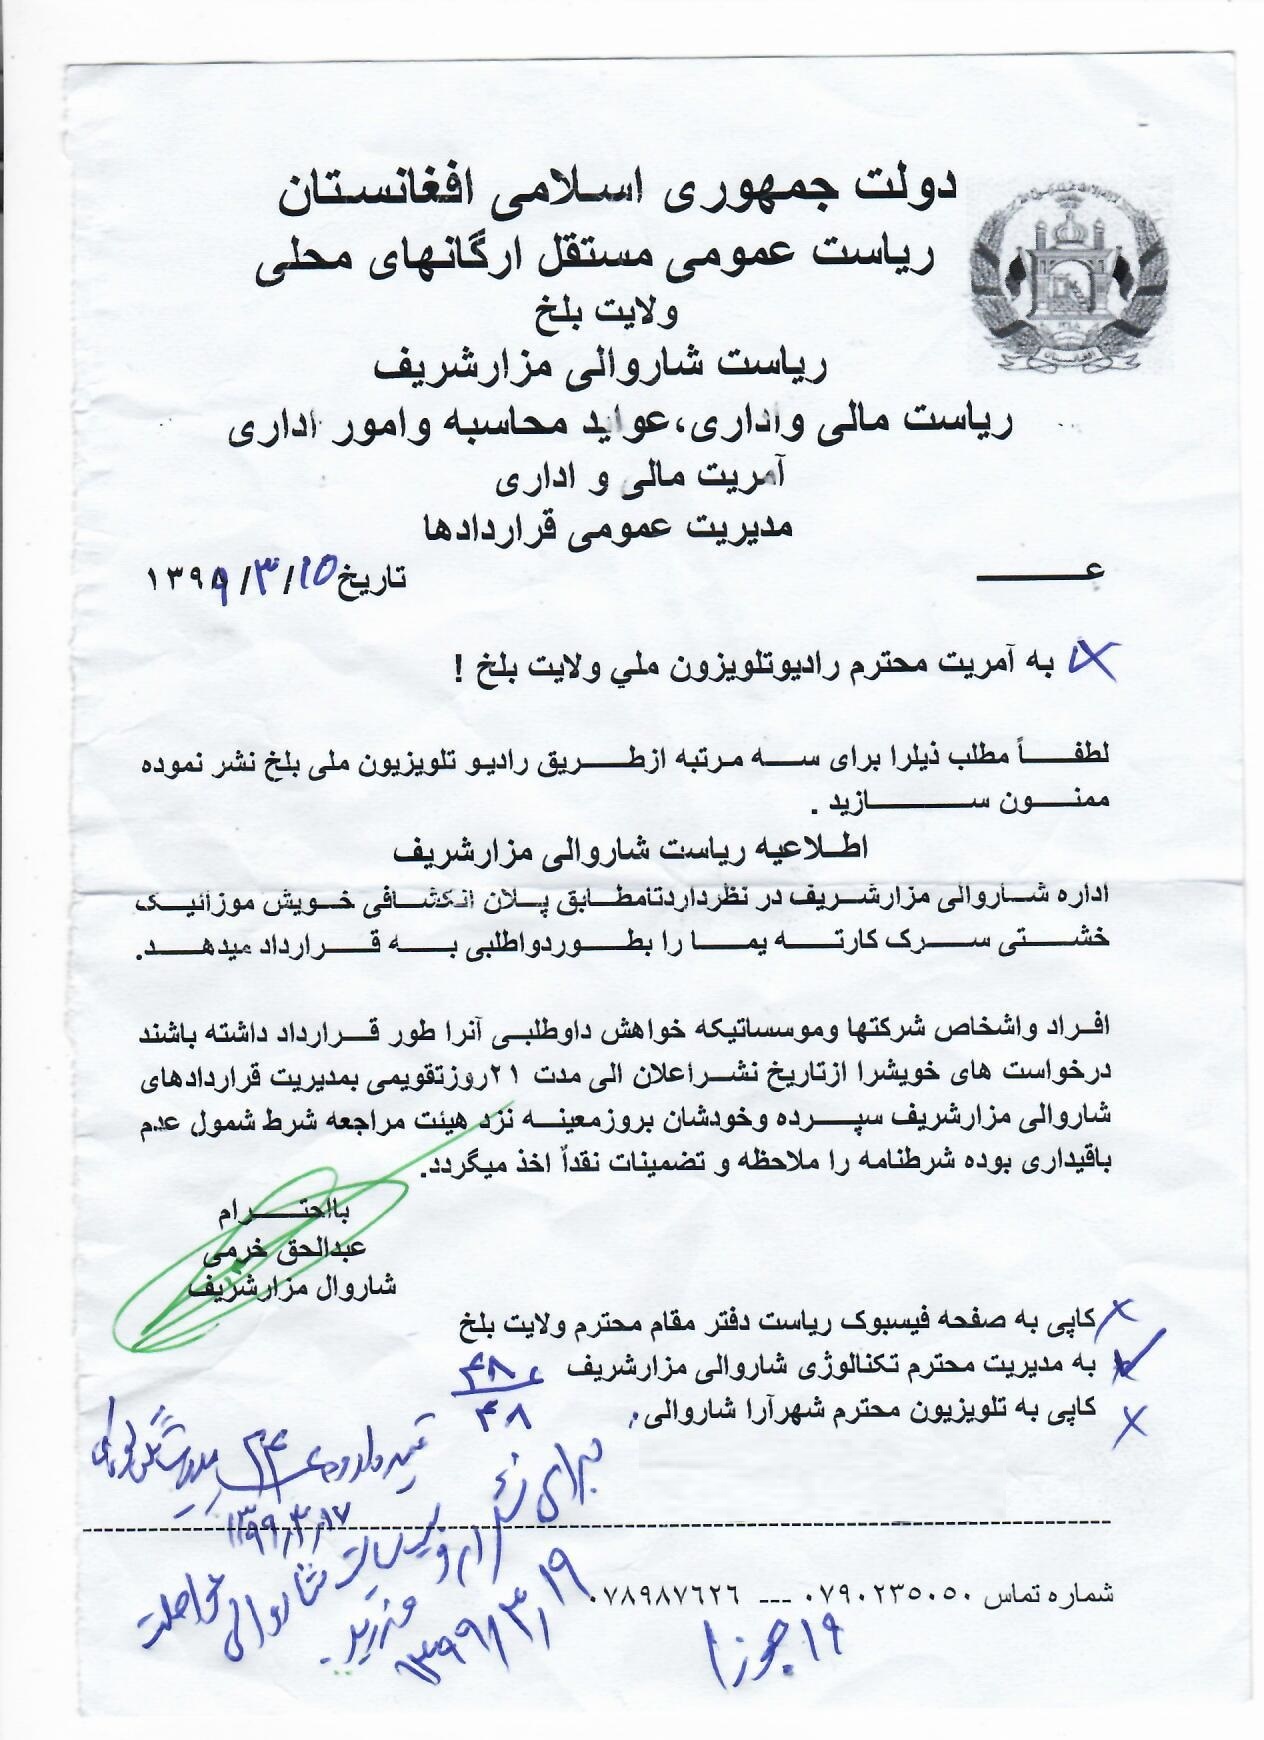 اطلاعیه داوطلبی ساخت و ساز موزاییک خشتی سرک کارته یما شاروالی مزارشریف